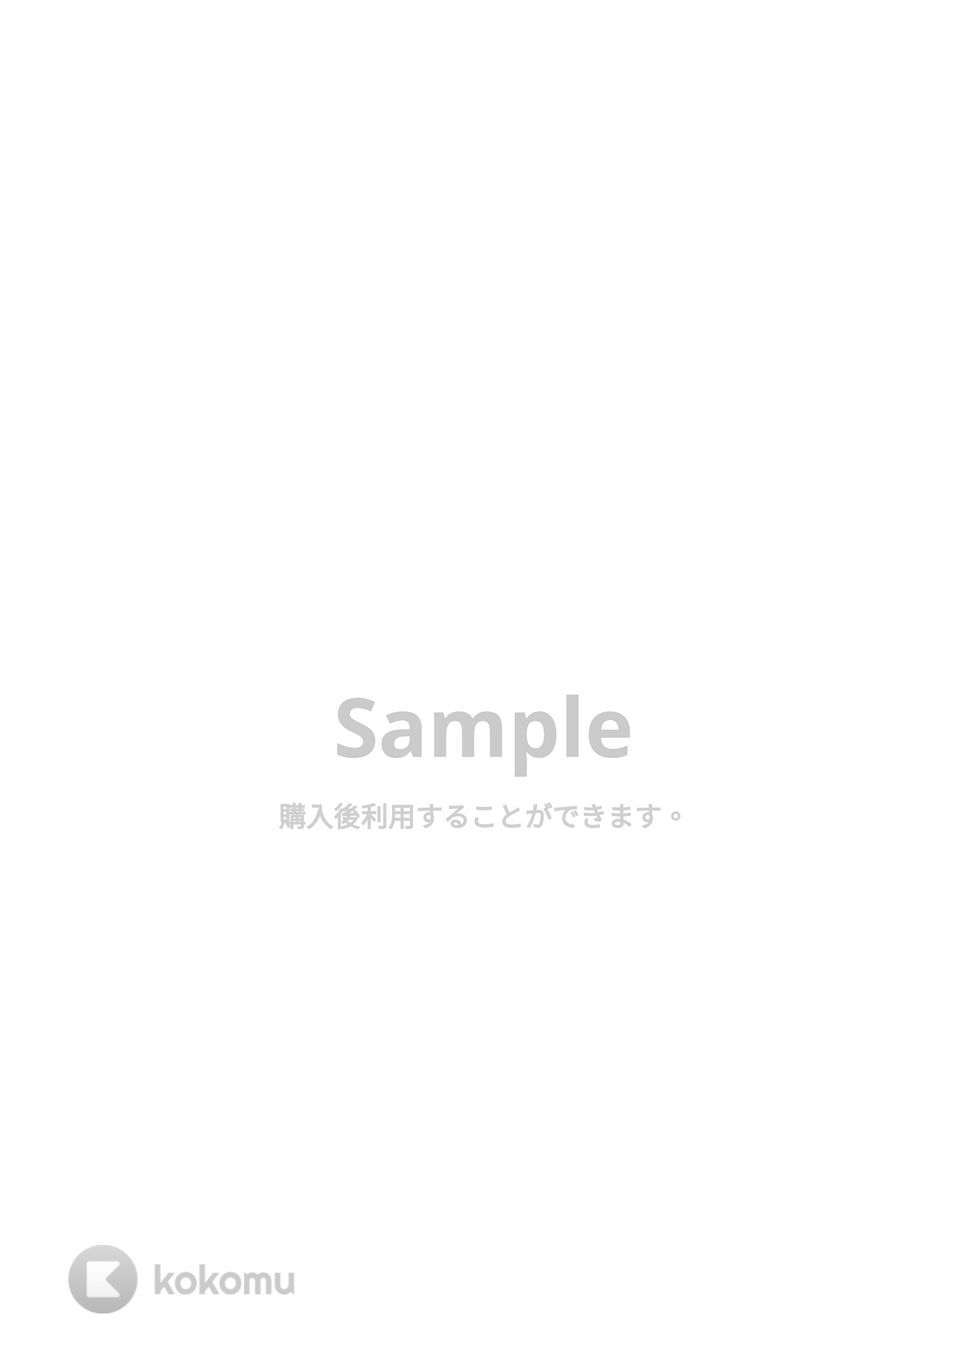 おジャ魔女どれみ - おジャ魔女カーニバル!! (吹奏楽少人数 / 実音) by orinpia music